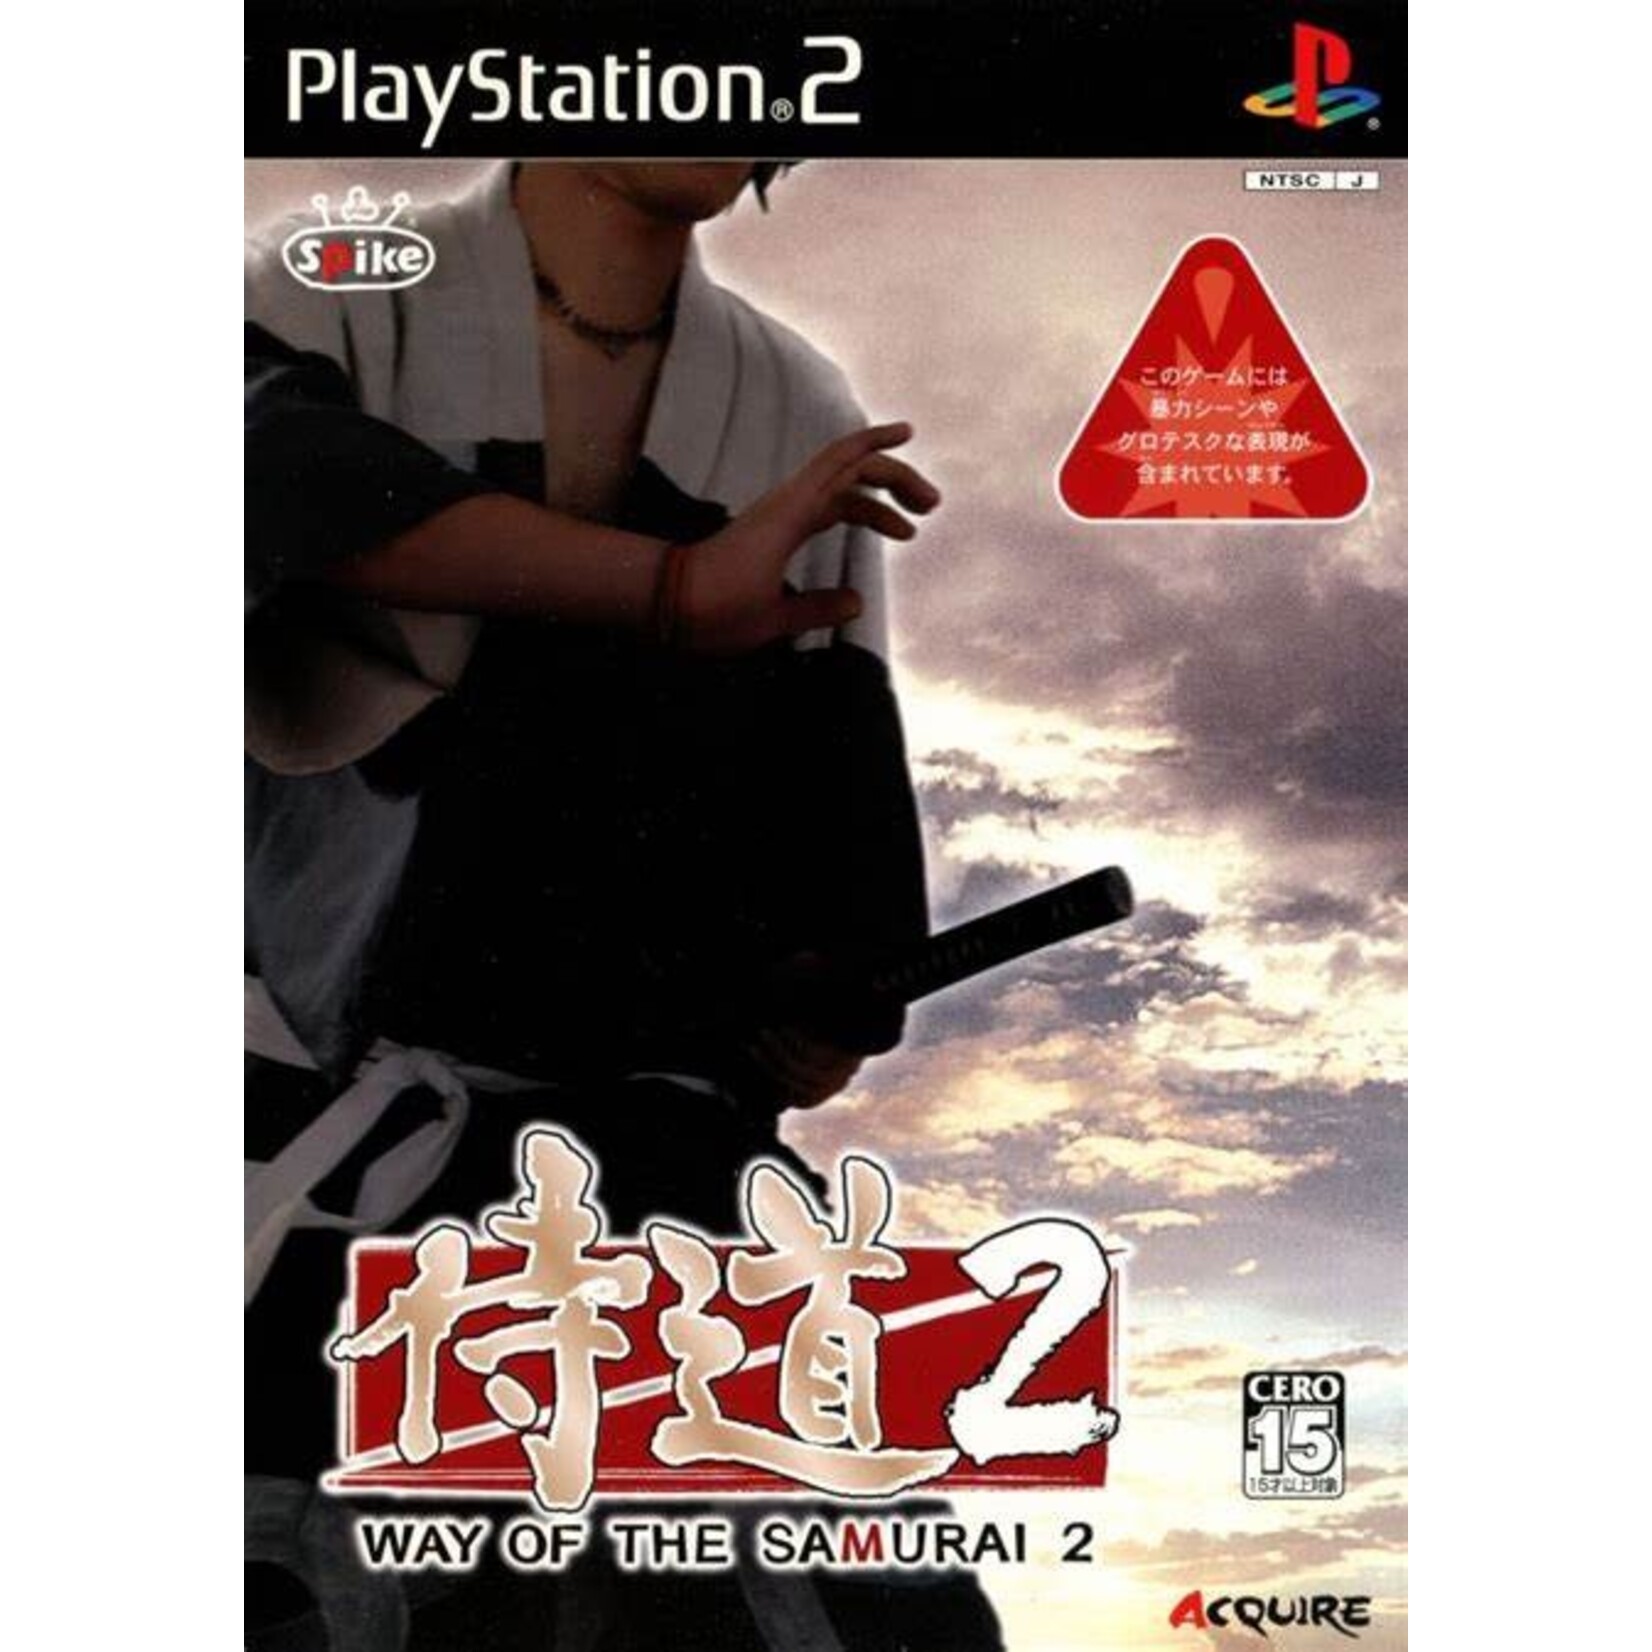 Way of the samurai 2 PS2